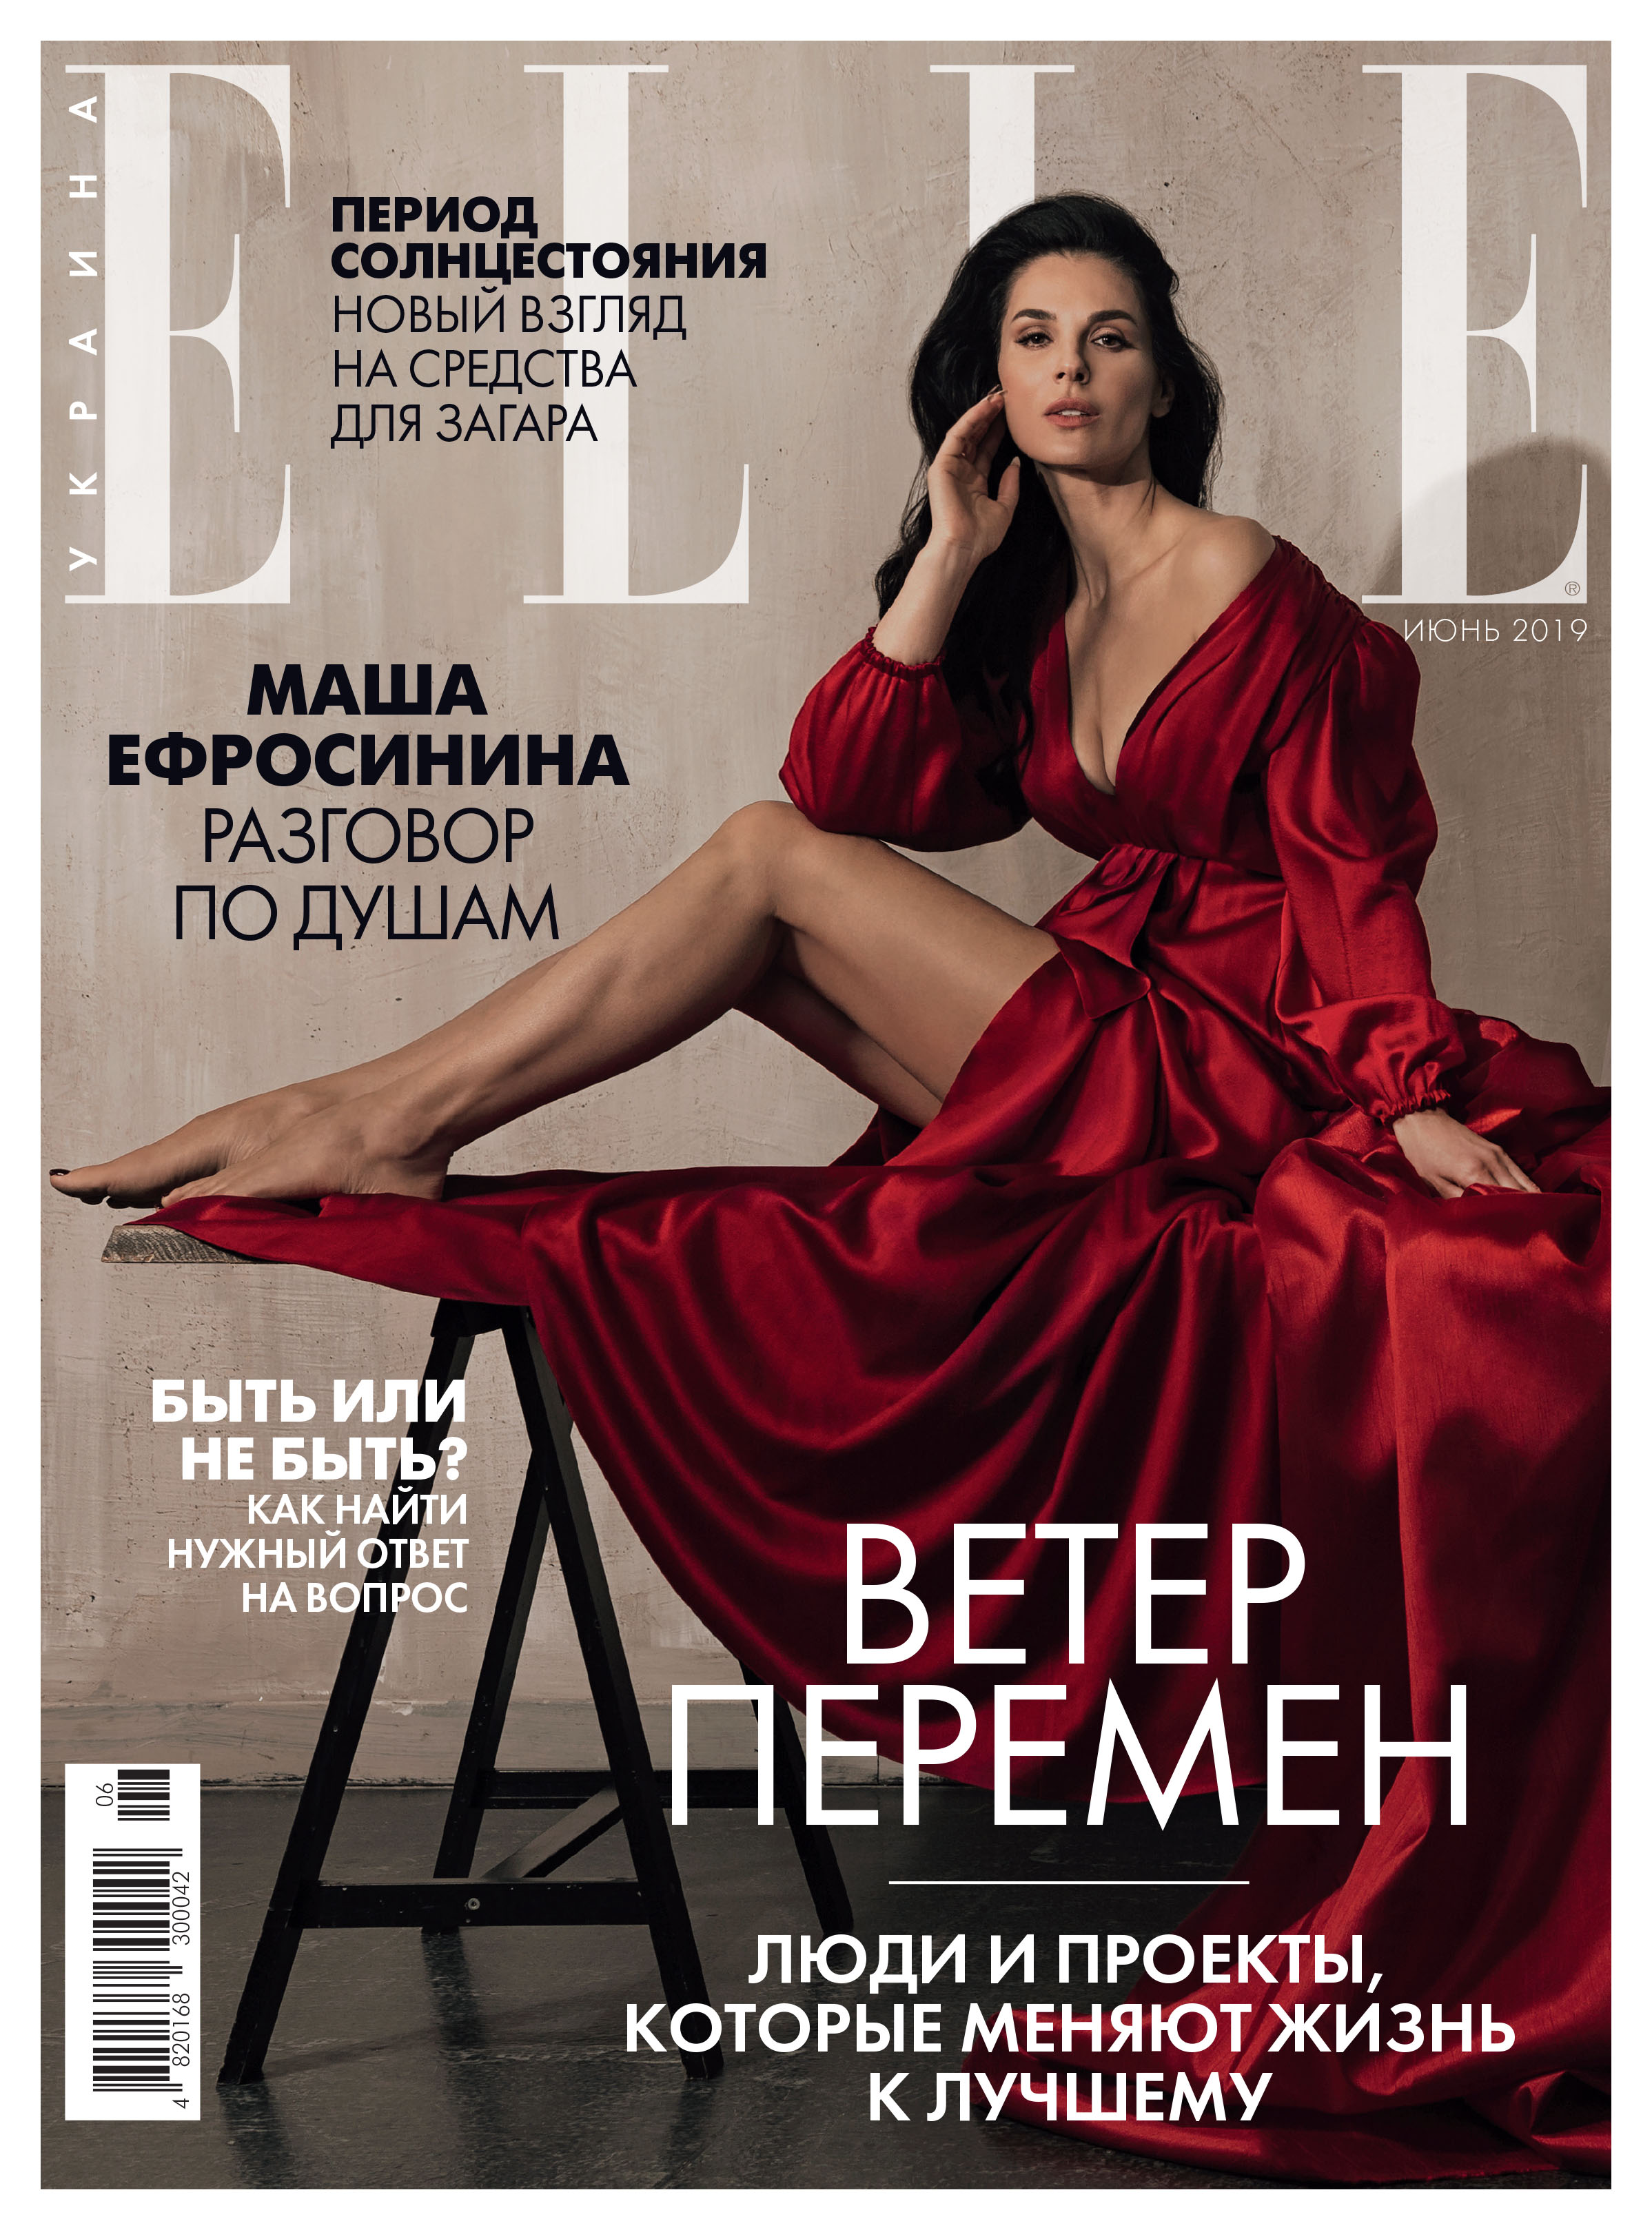 Маша Ефросинина, интервью, обложка журнала, elle ukraine, Natalia Pasichnyk, ELLE Ukraine, журнал ELLE